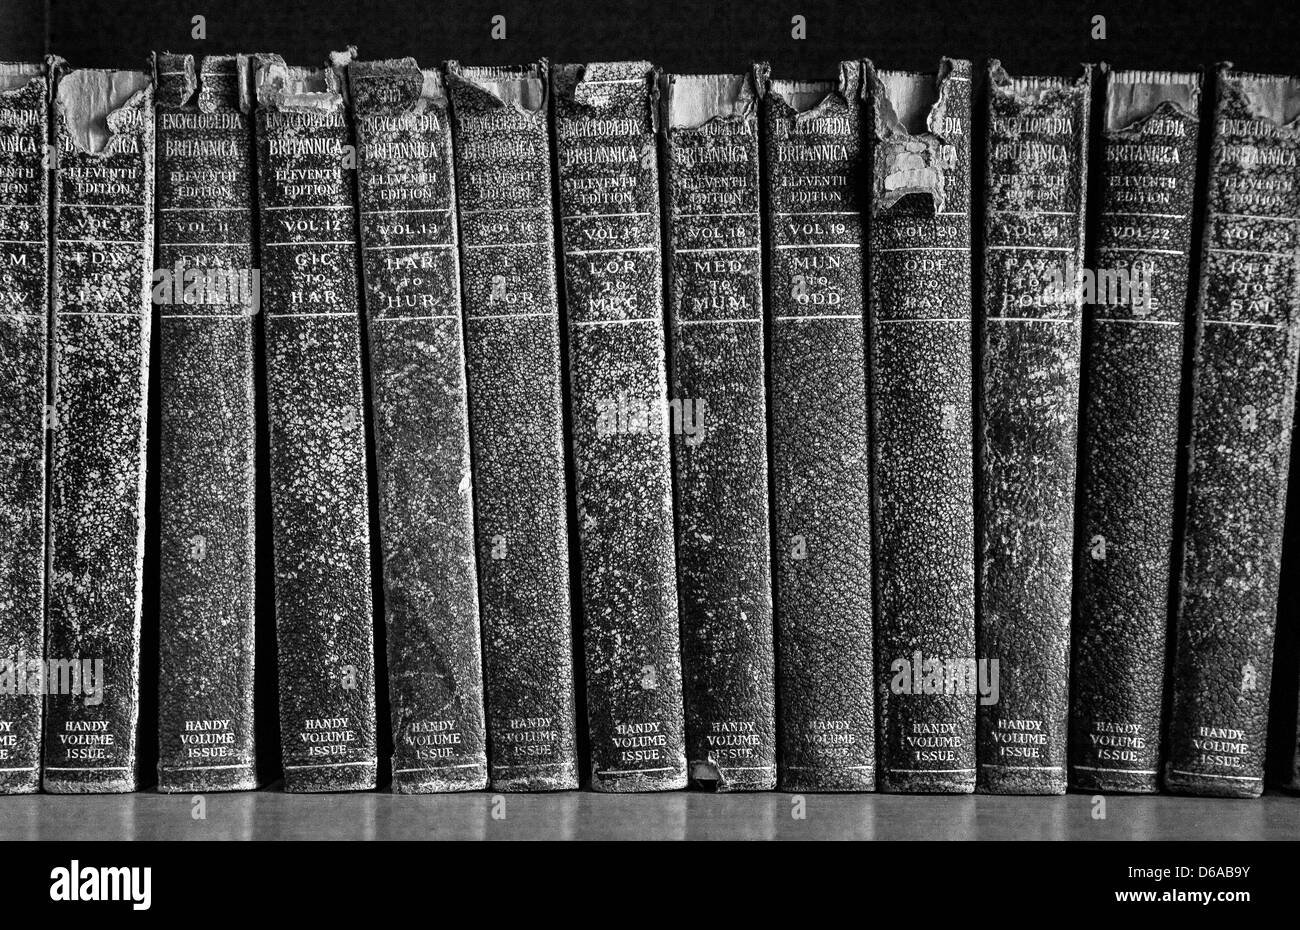 Le vieux cuir d'encyclopédie Britannica mis sur une étagère Banque D'Images